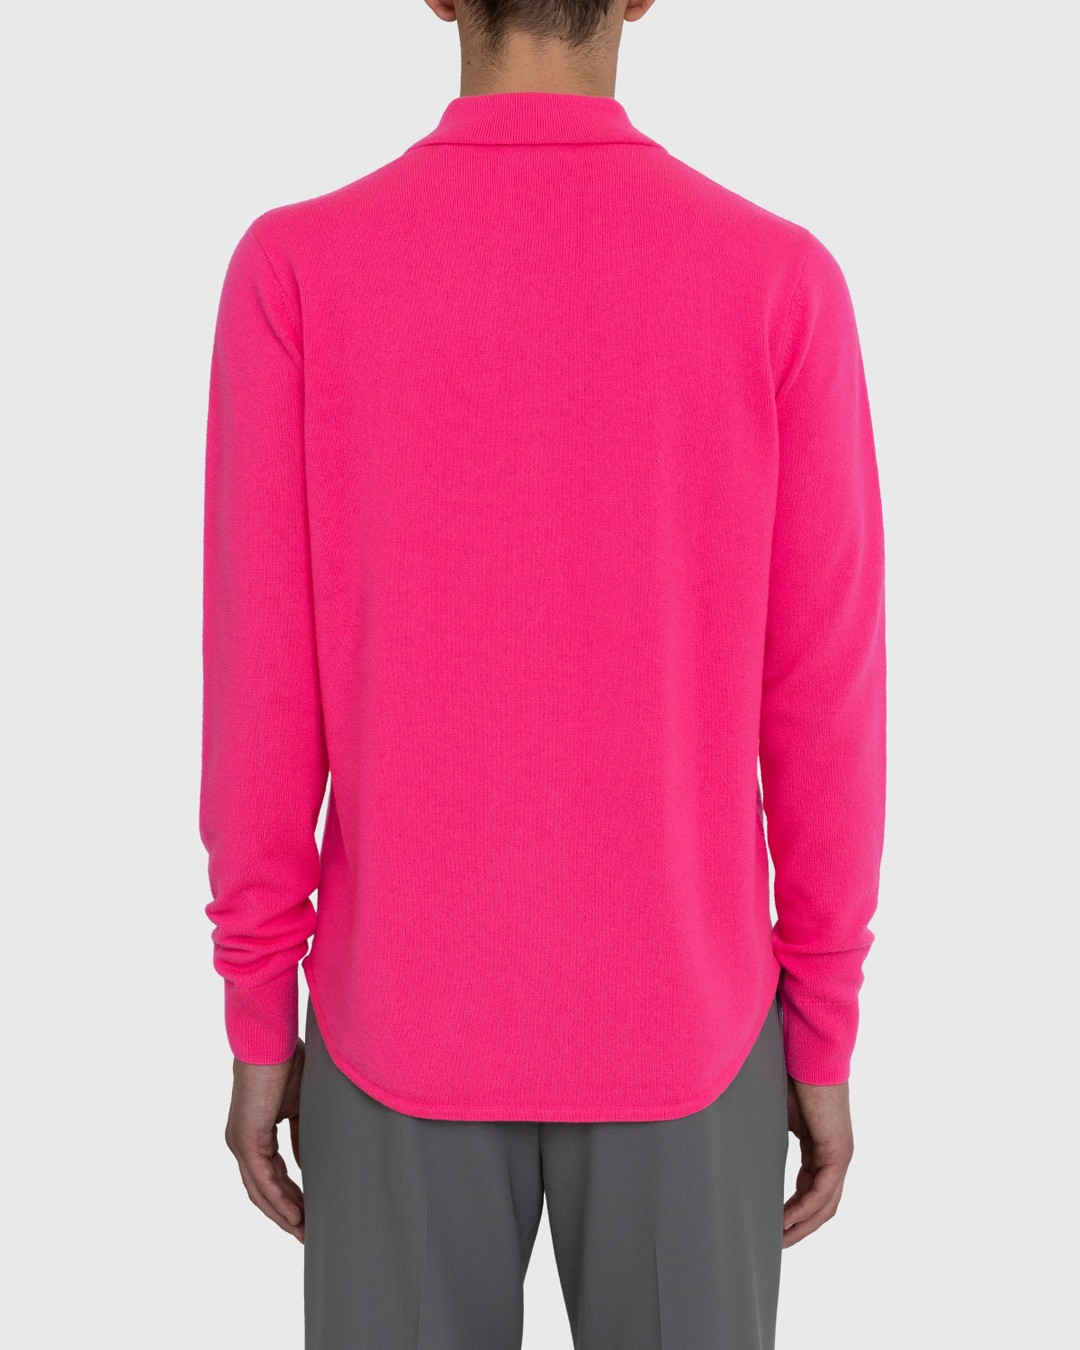 Dries van Noten – Never Cardigan - Knitwear - Pink - Image 4